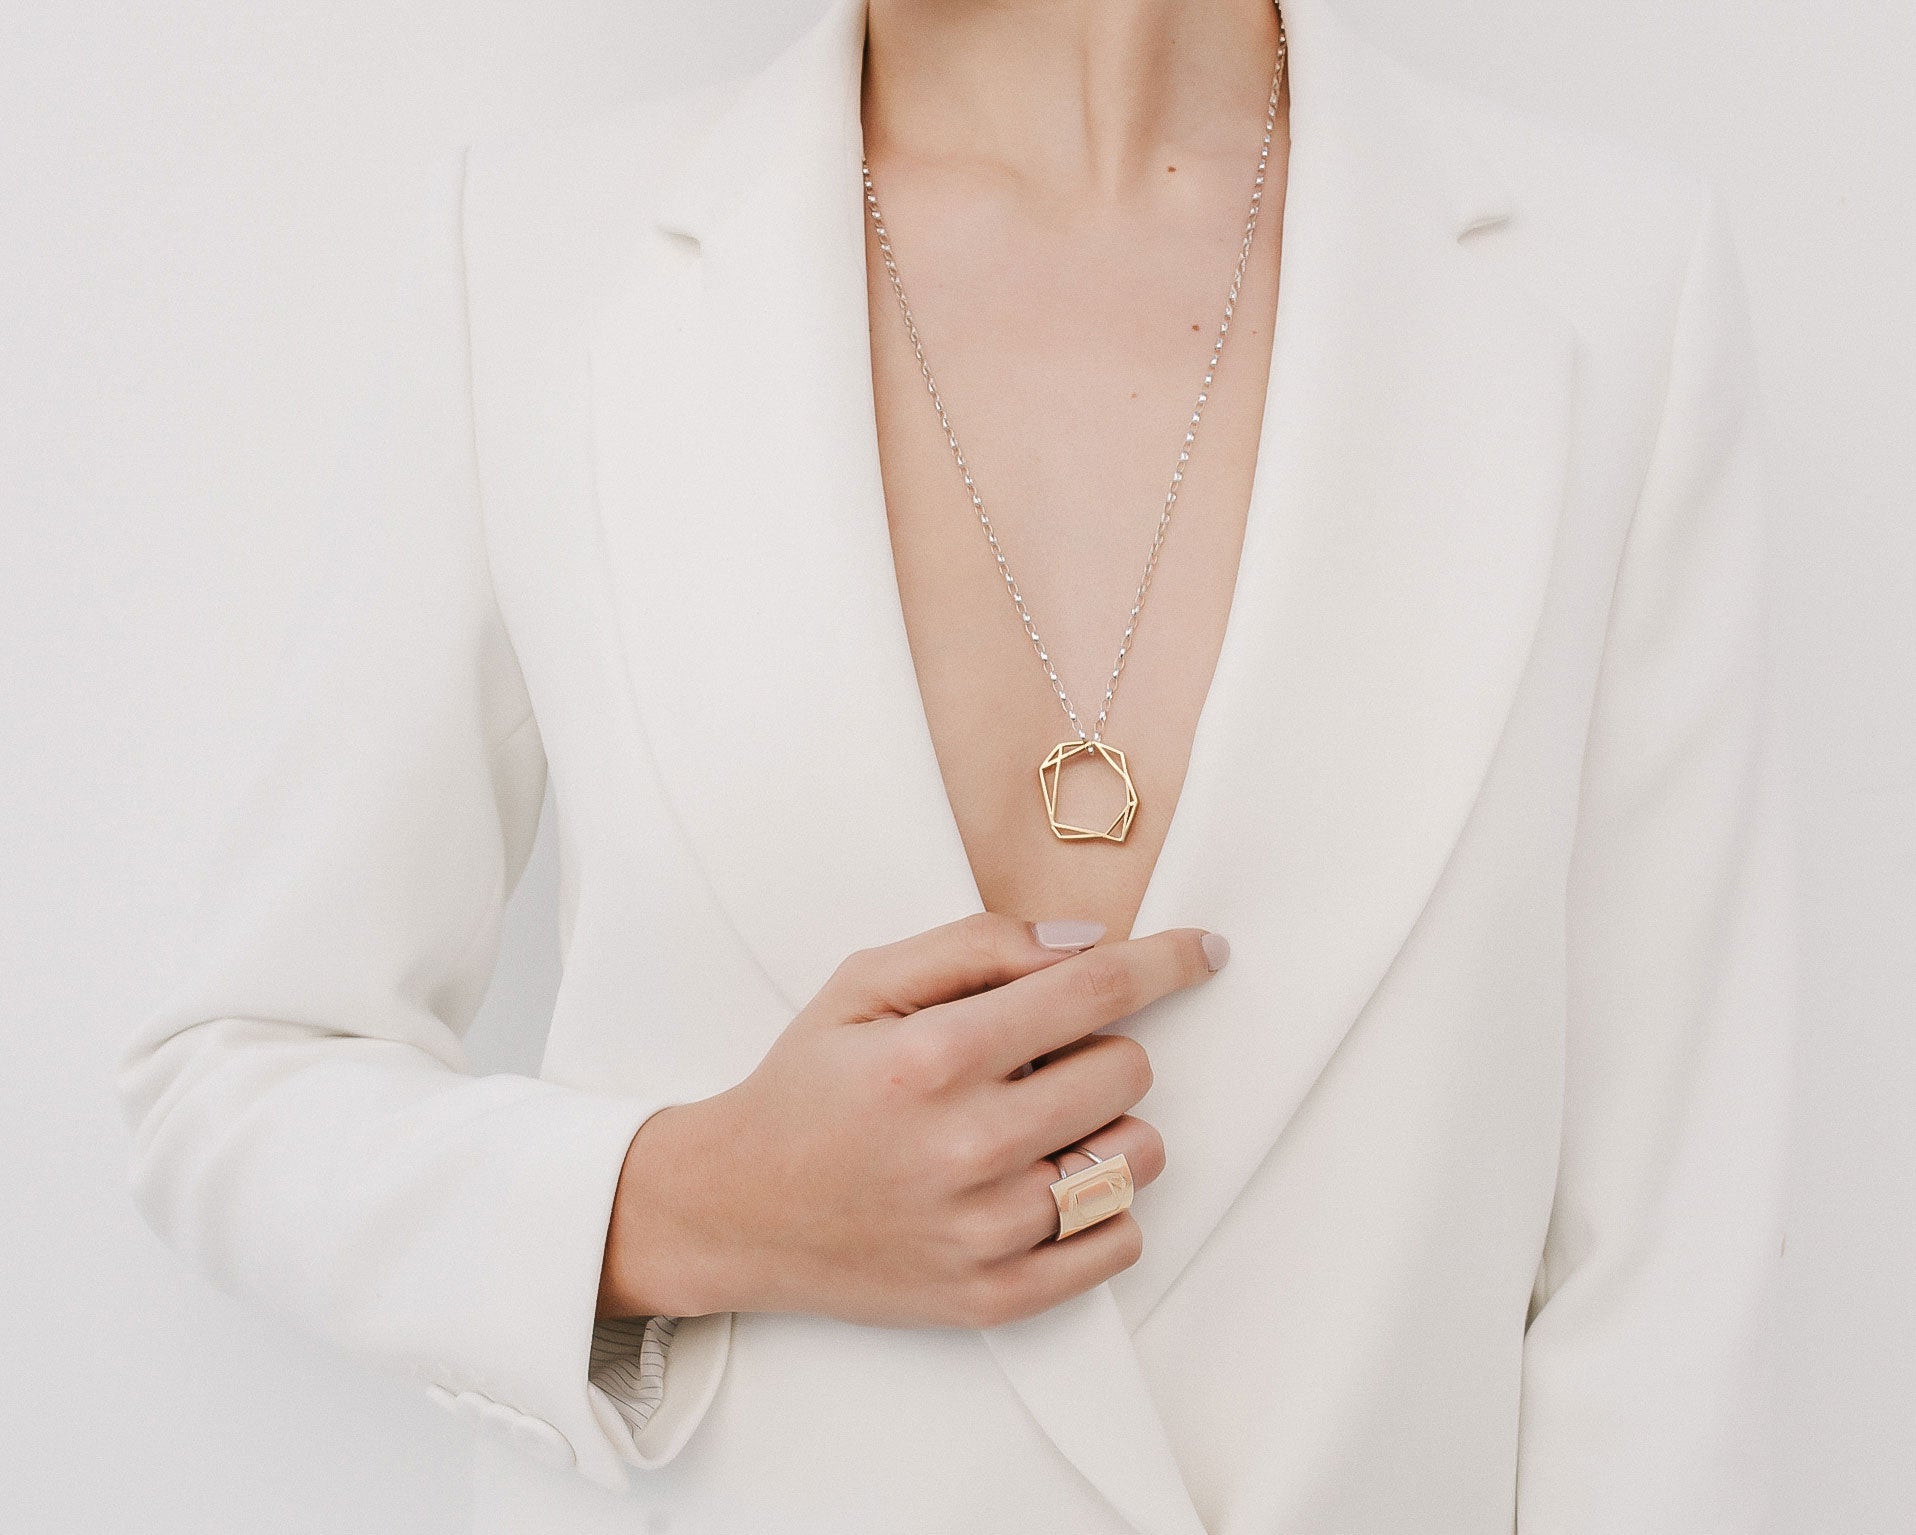 VUITTON: Collar colgante modelo Empreinte de oro amari…